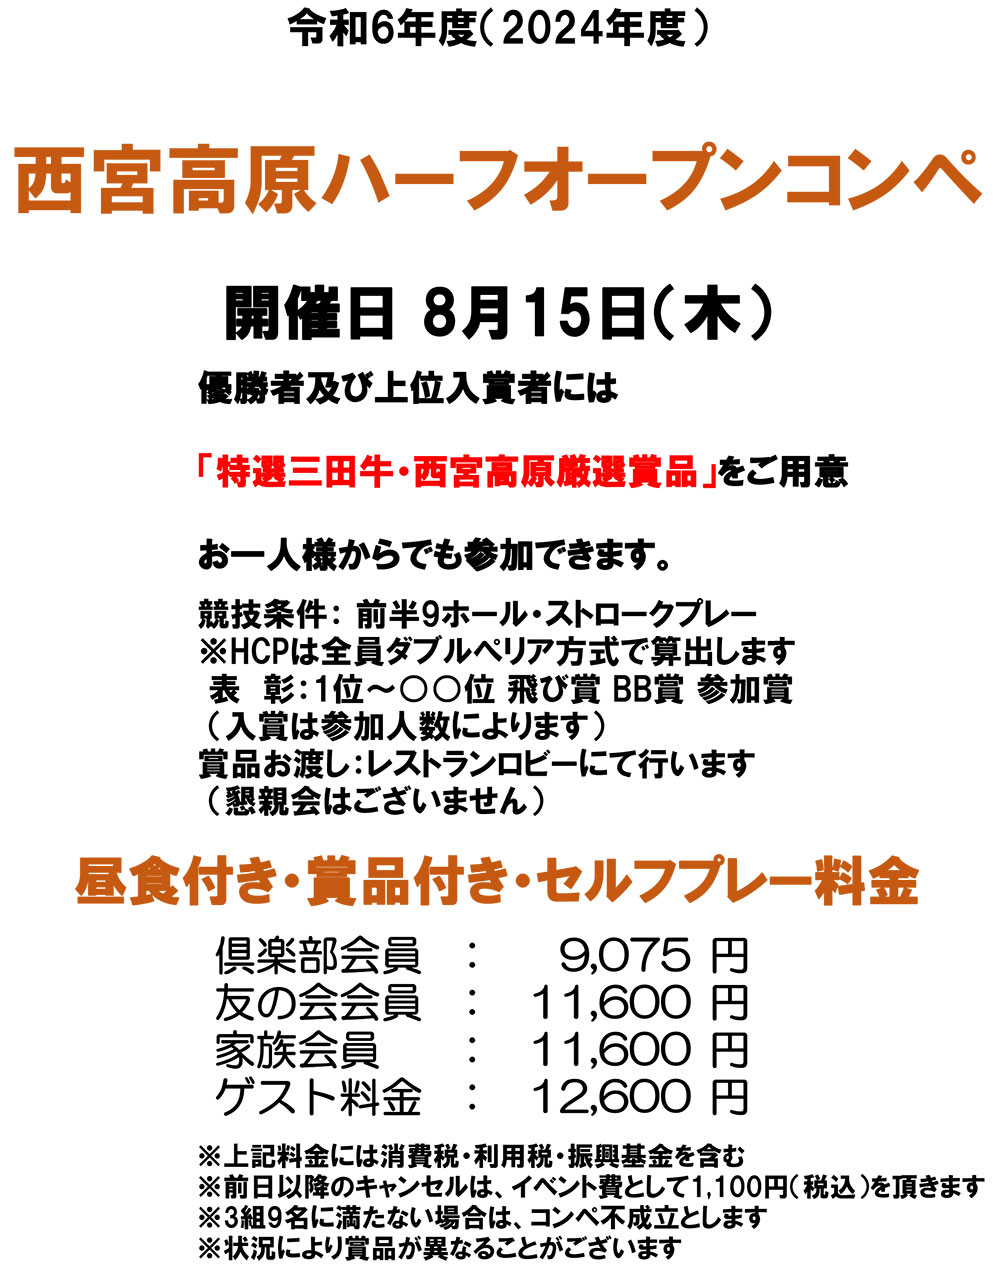 三田特産品ハーフオープンコンペ開催日 8月15日